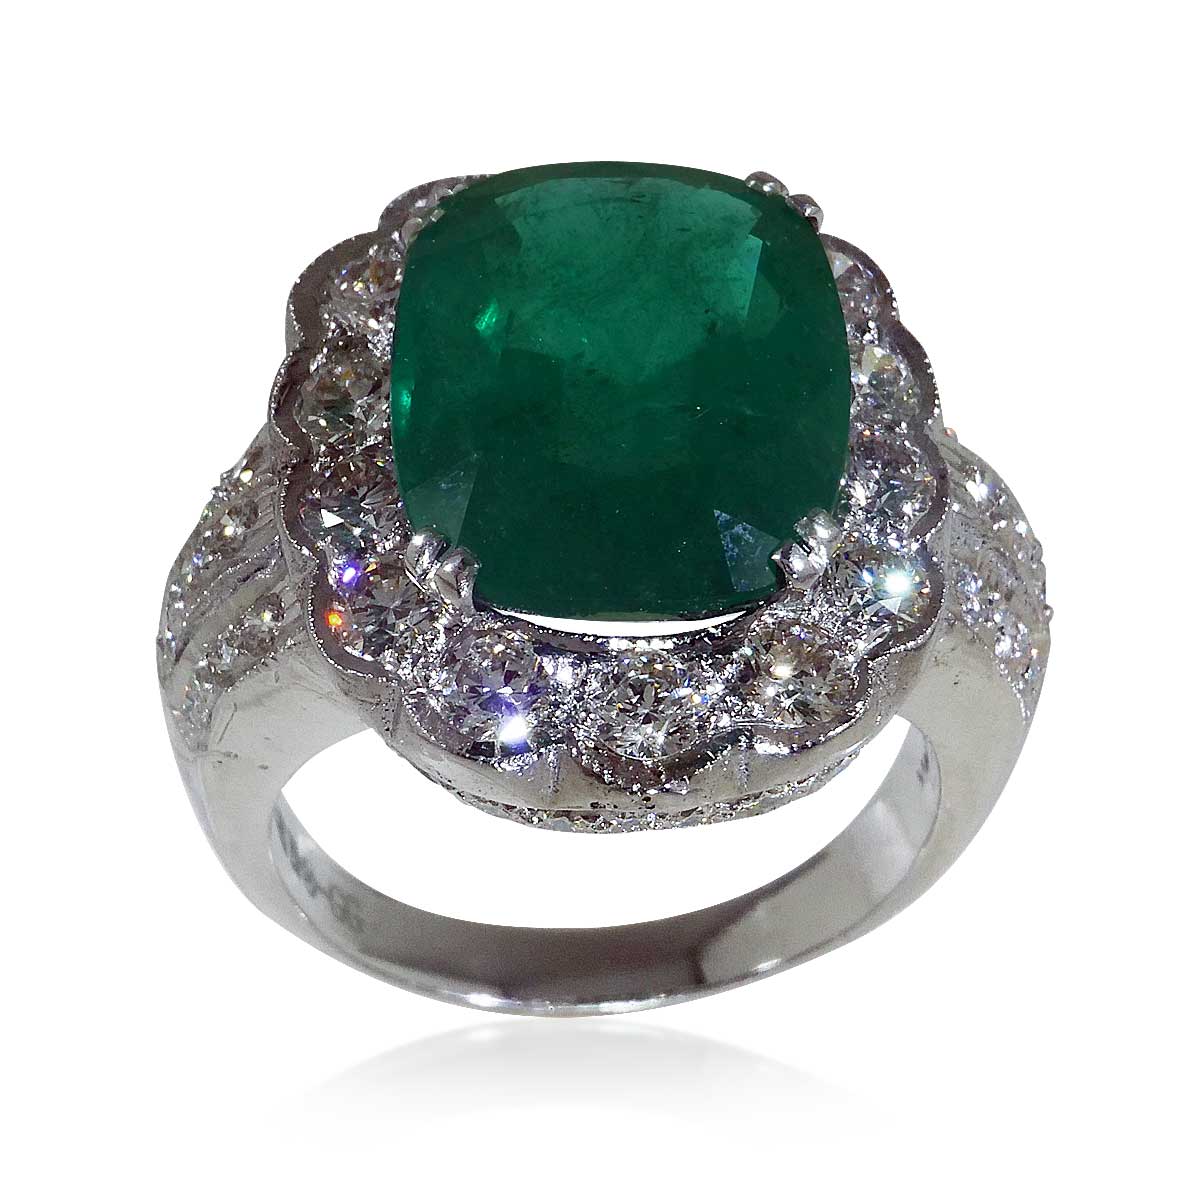  Smaragd-Diamant-Ring in Weissgold mit 11,86ct Smaragd und 2,61ct Brillanten